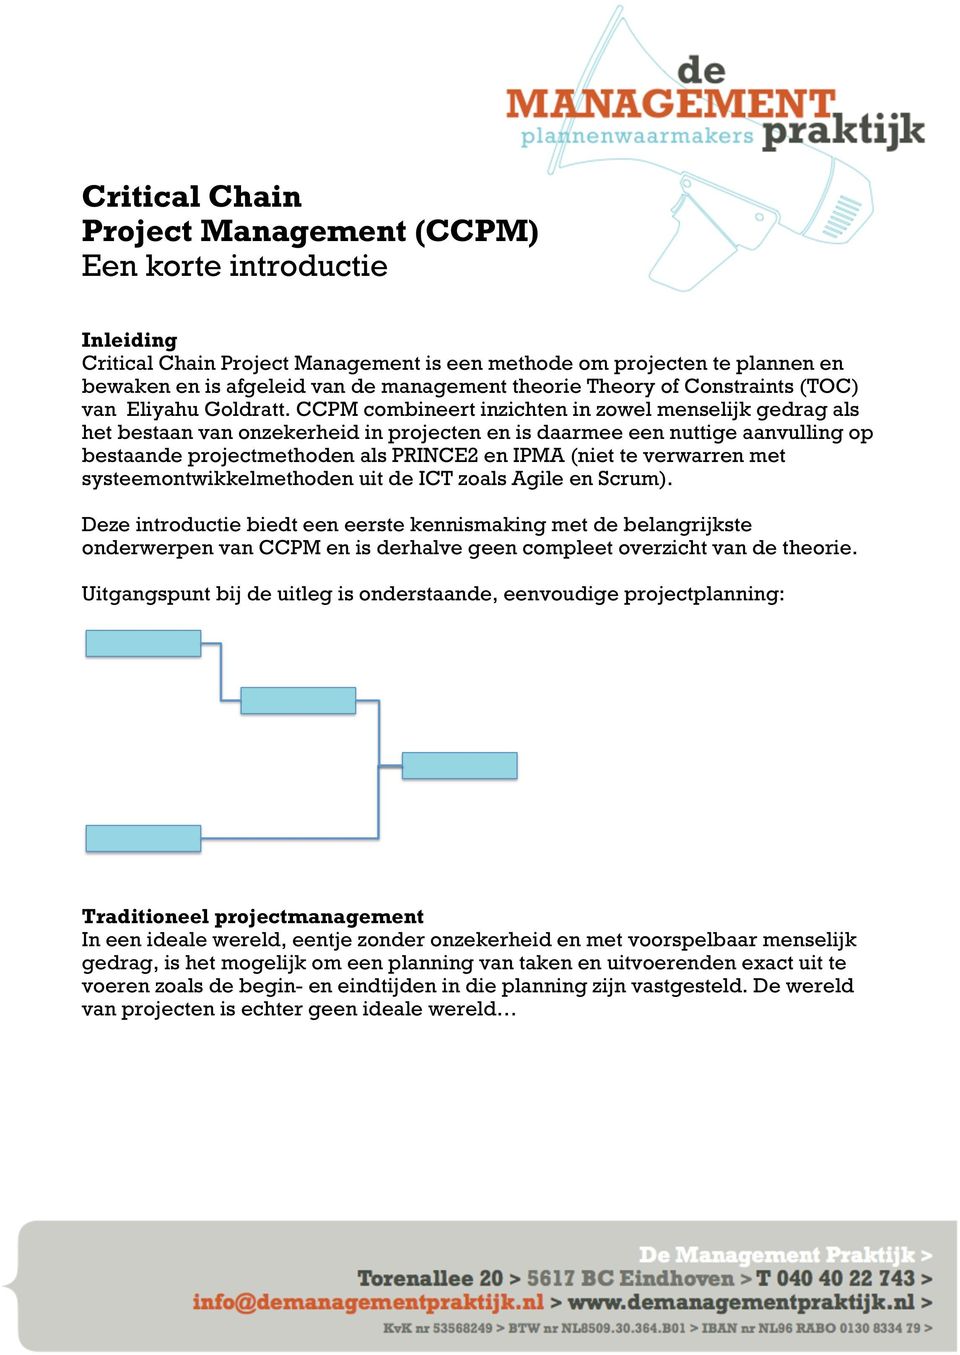 CCPM combineert inzichten in zowel menselijk gedrag als het bestaan van onzekerheid in projecten en is daarmee een nuttige aanvulling op bestaande projectmethoden als PRINCE2 en IPMA (niet te